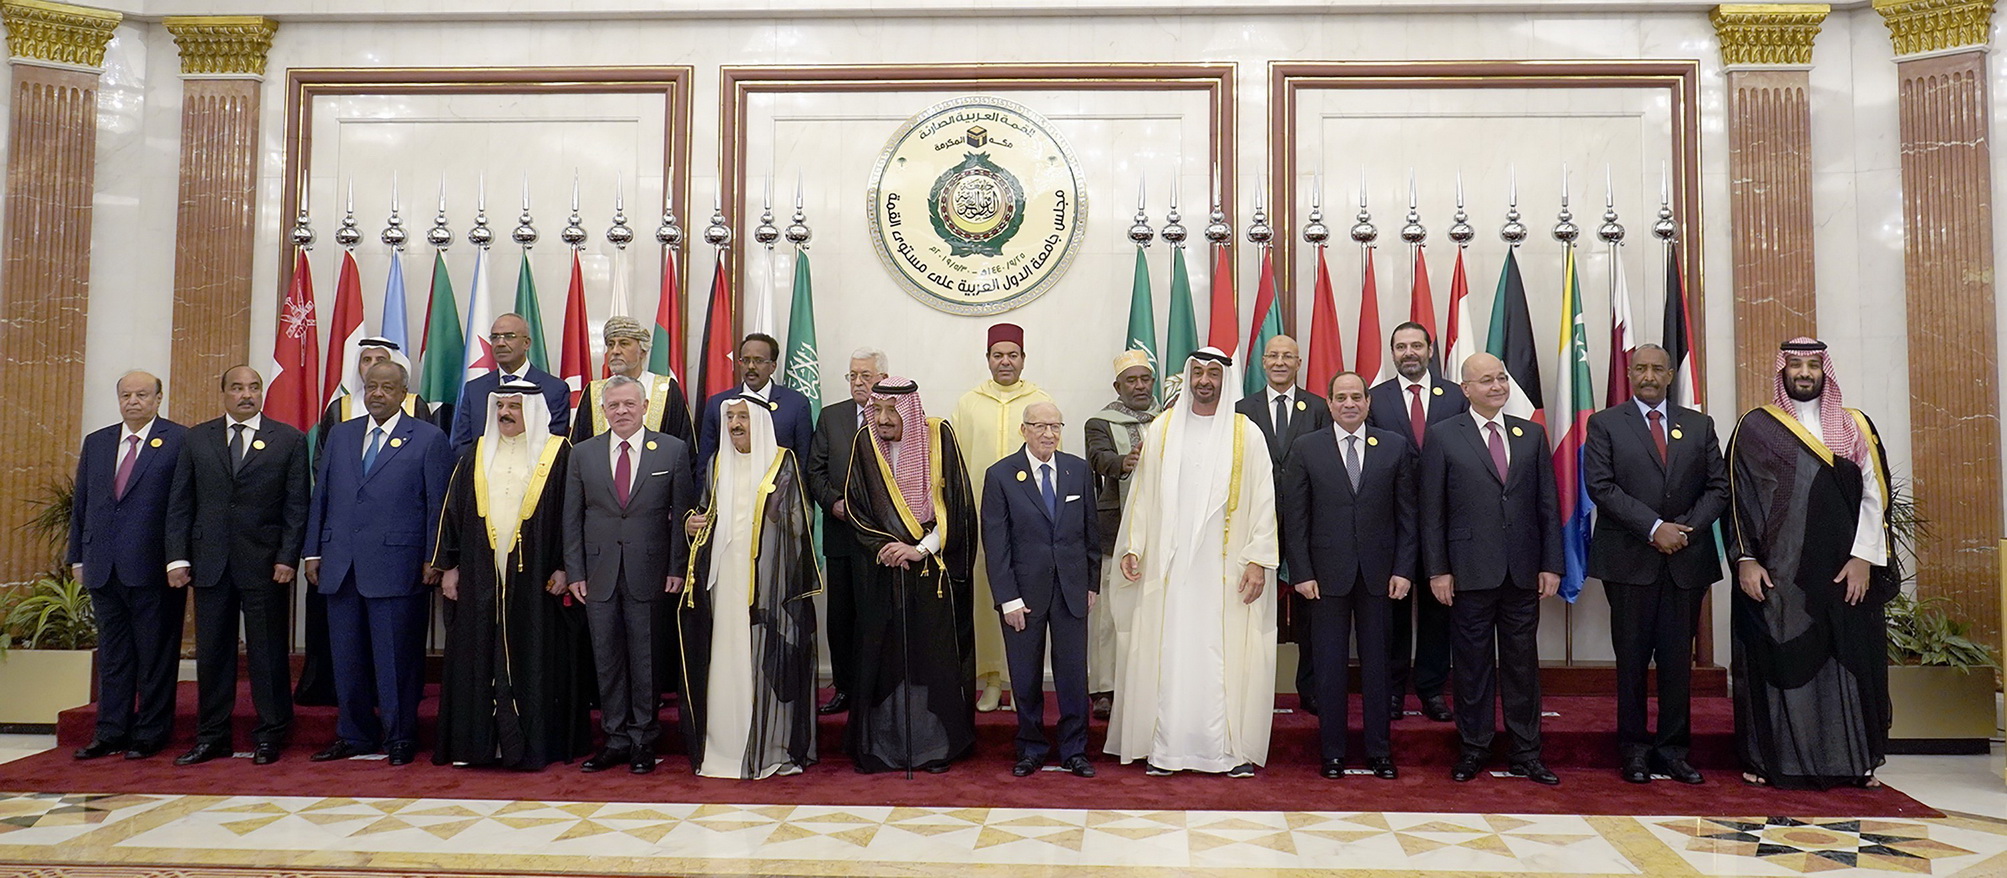 Lãnh đạo và quan chức các nước chụp ảnh chung tại Hội nghị thượng đỉnh khẩn cấp Liên đoàn Arab (AL) ở thành phố Mecca, Saudi Arabia ngày 31/5/2019. (Ảnh: AFP/TTXVN)